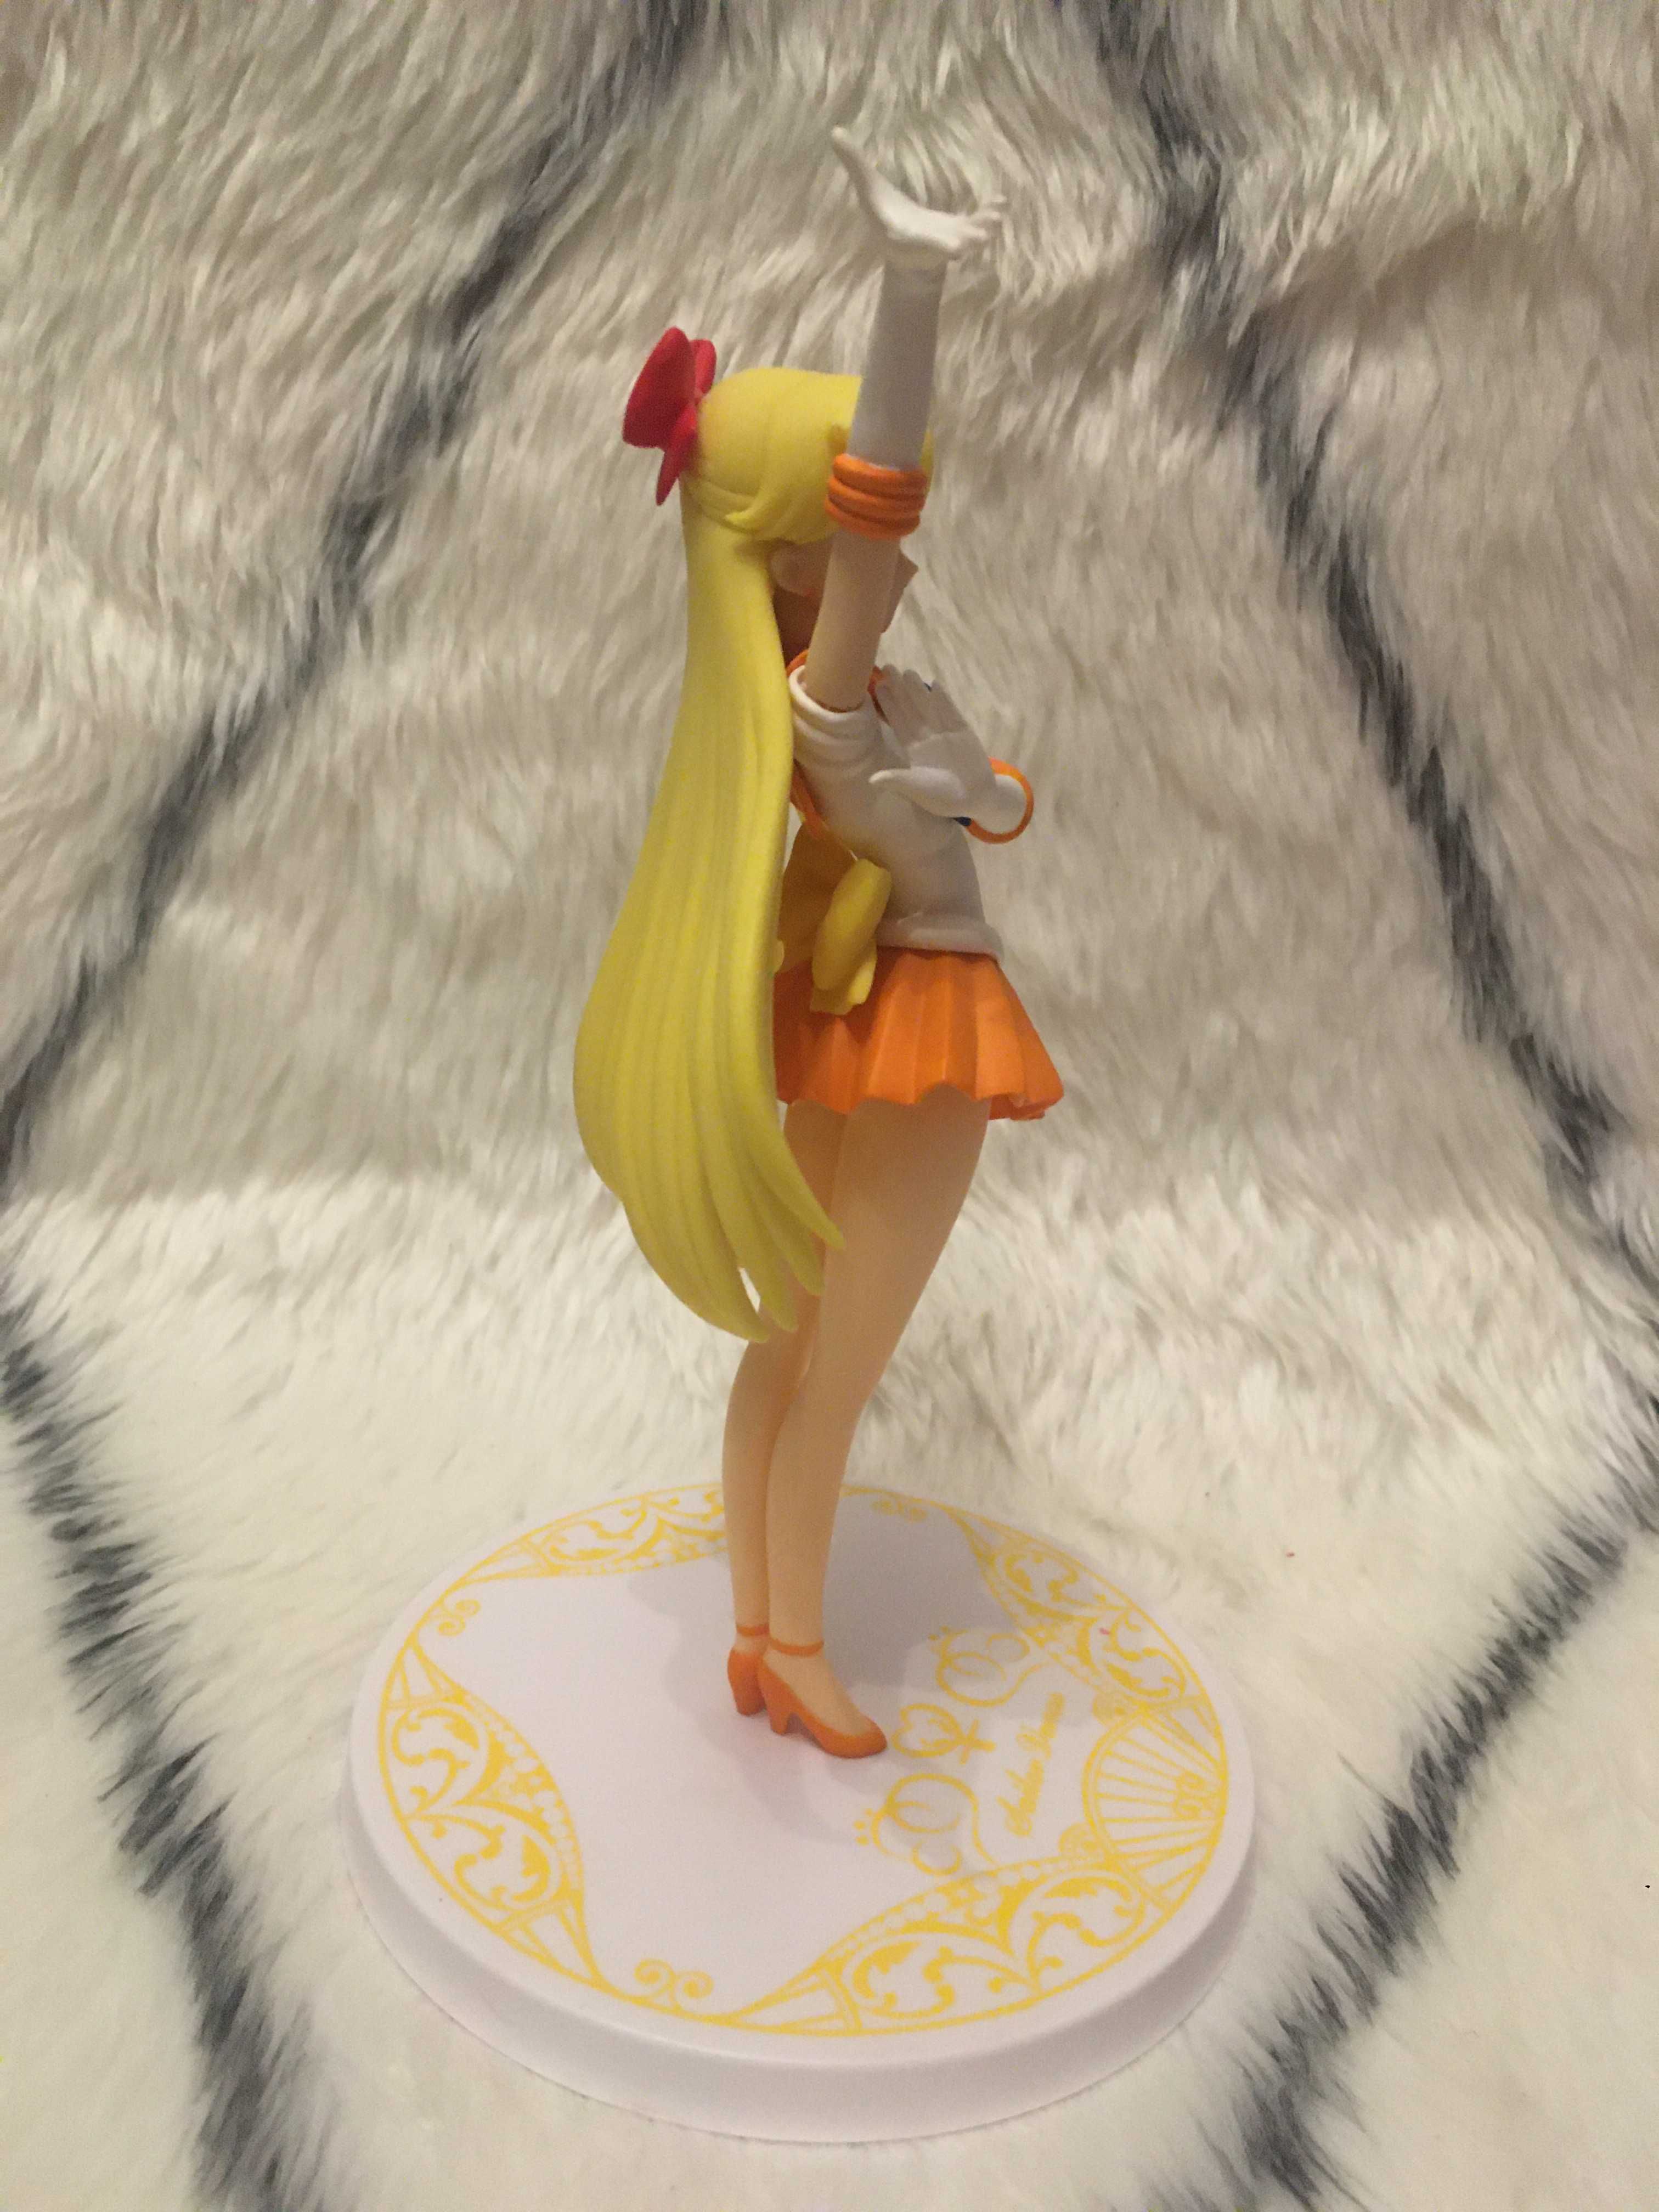 Sailor Venus figurka anime